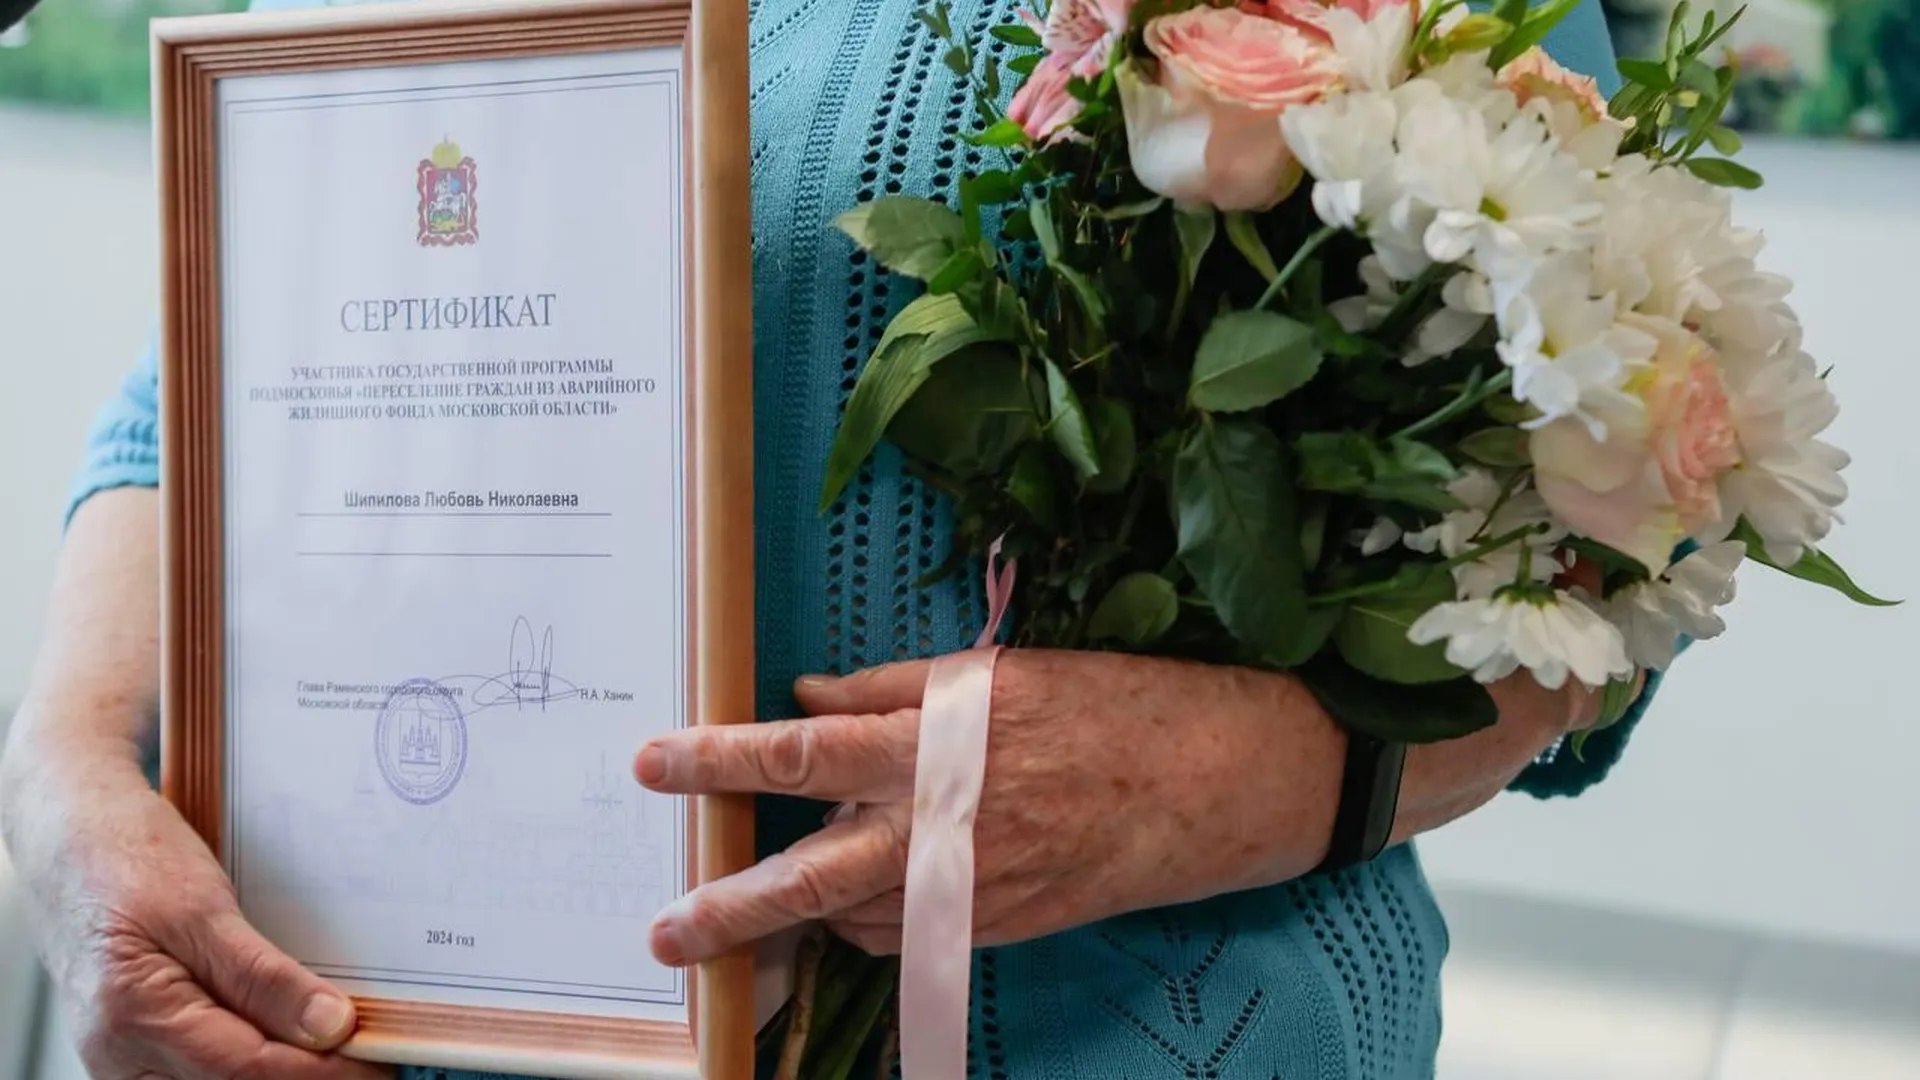 Сертификаты на переселение из аварийного жилья выдали 24 семьям из Раменского